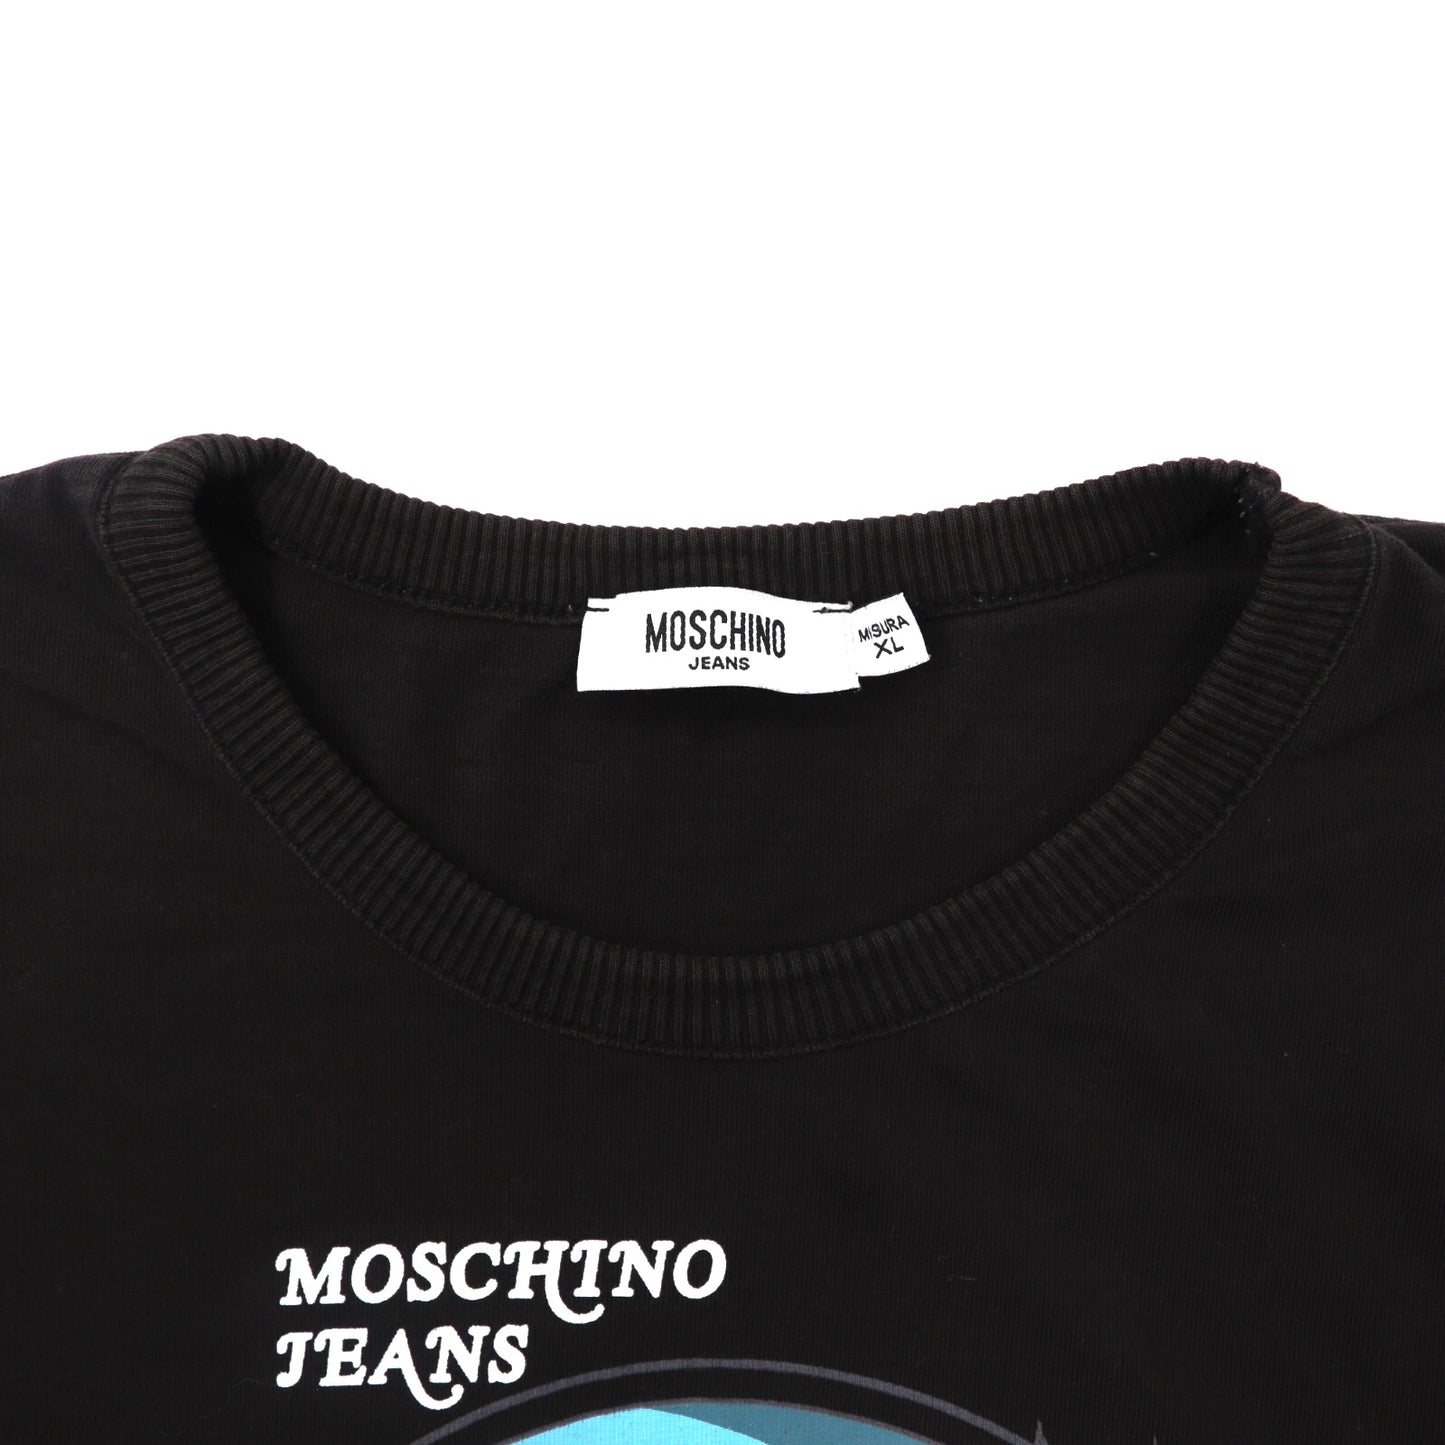 MOSCHINO JEANS ロングスリーブTシャツ XL ブラック BIG FISHプリント 90年代